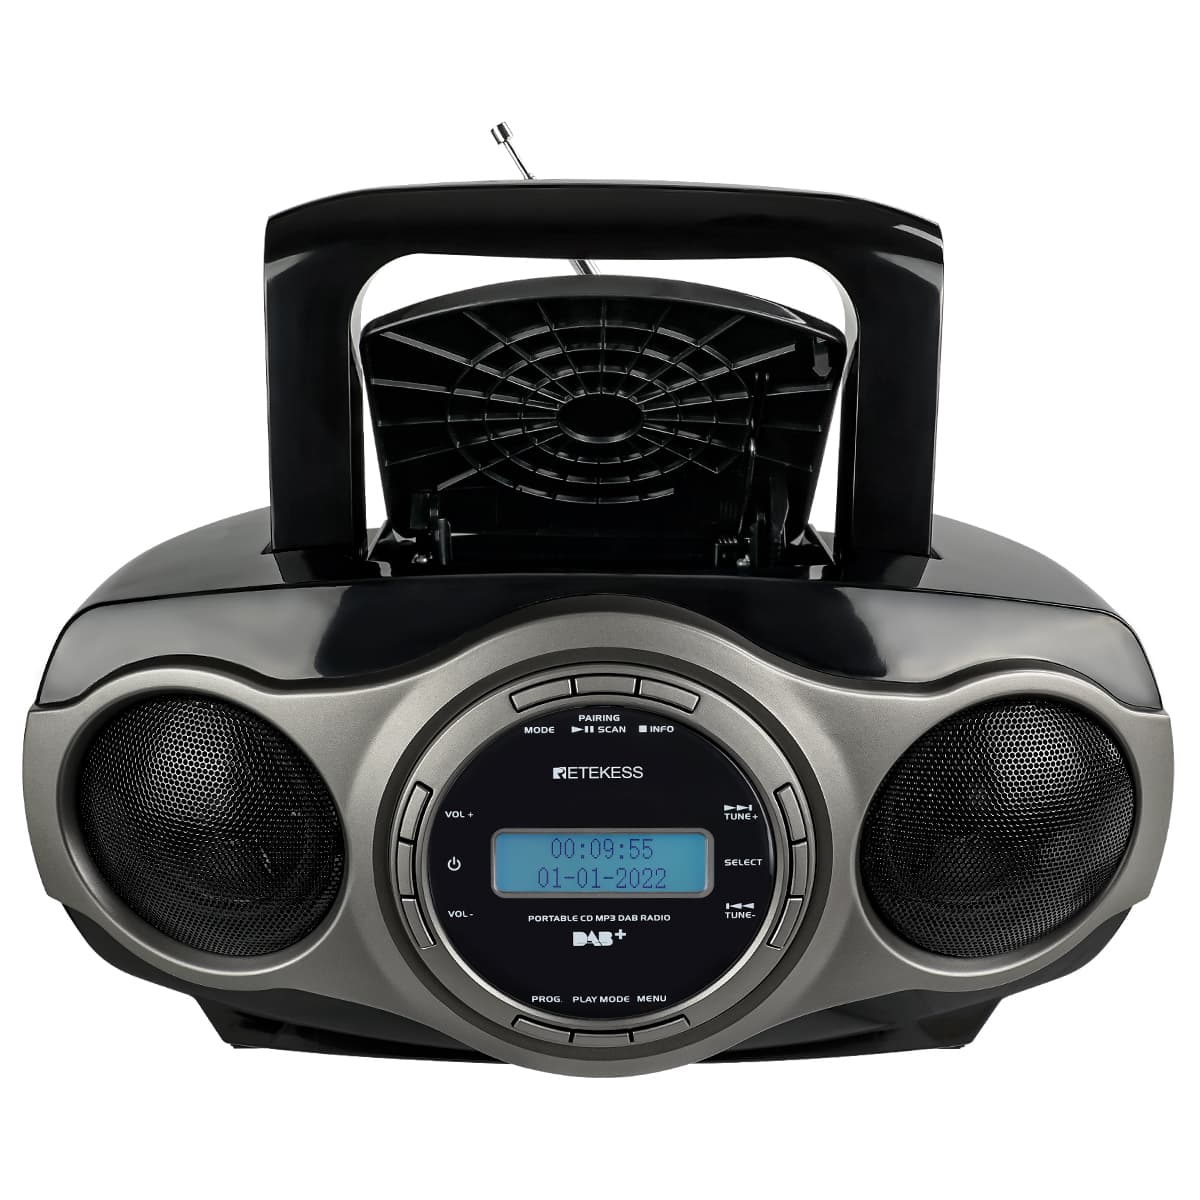 Retekess TR631 Stereo FM Radio Portable CD Receive DAB Station, USB, CD, AUX, European Version